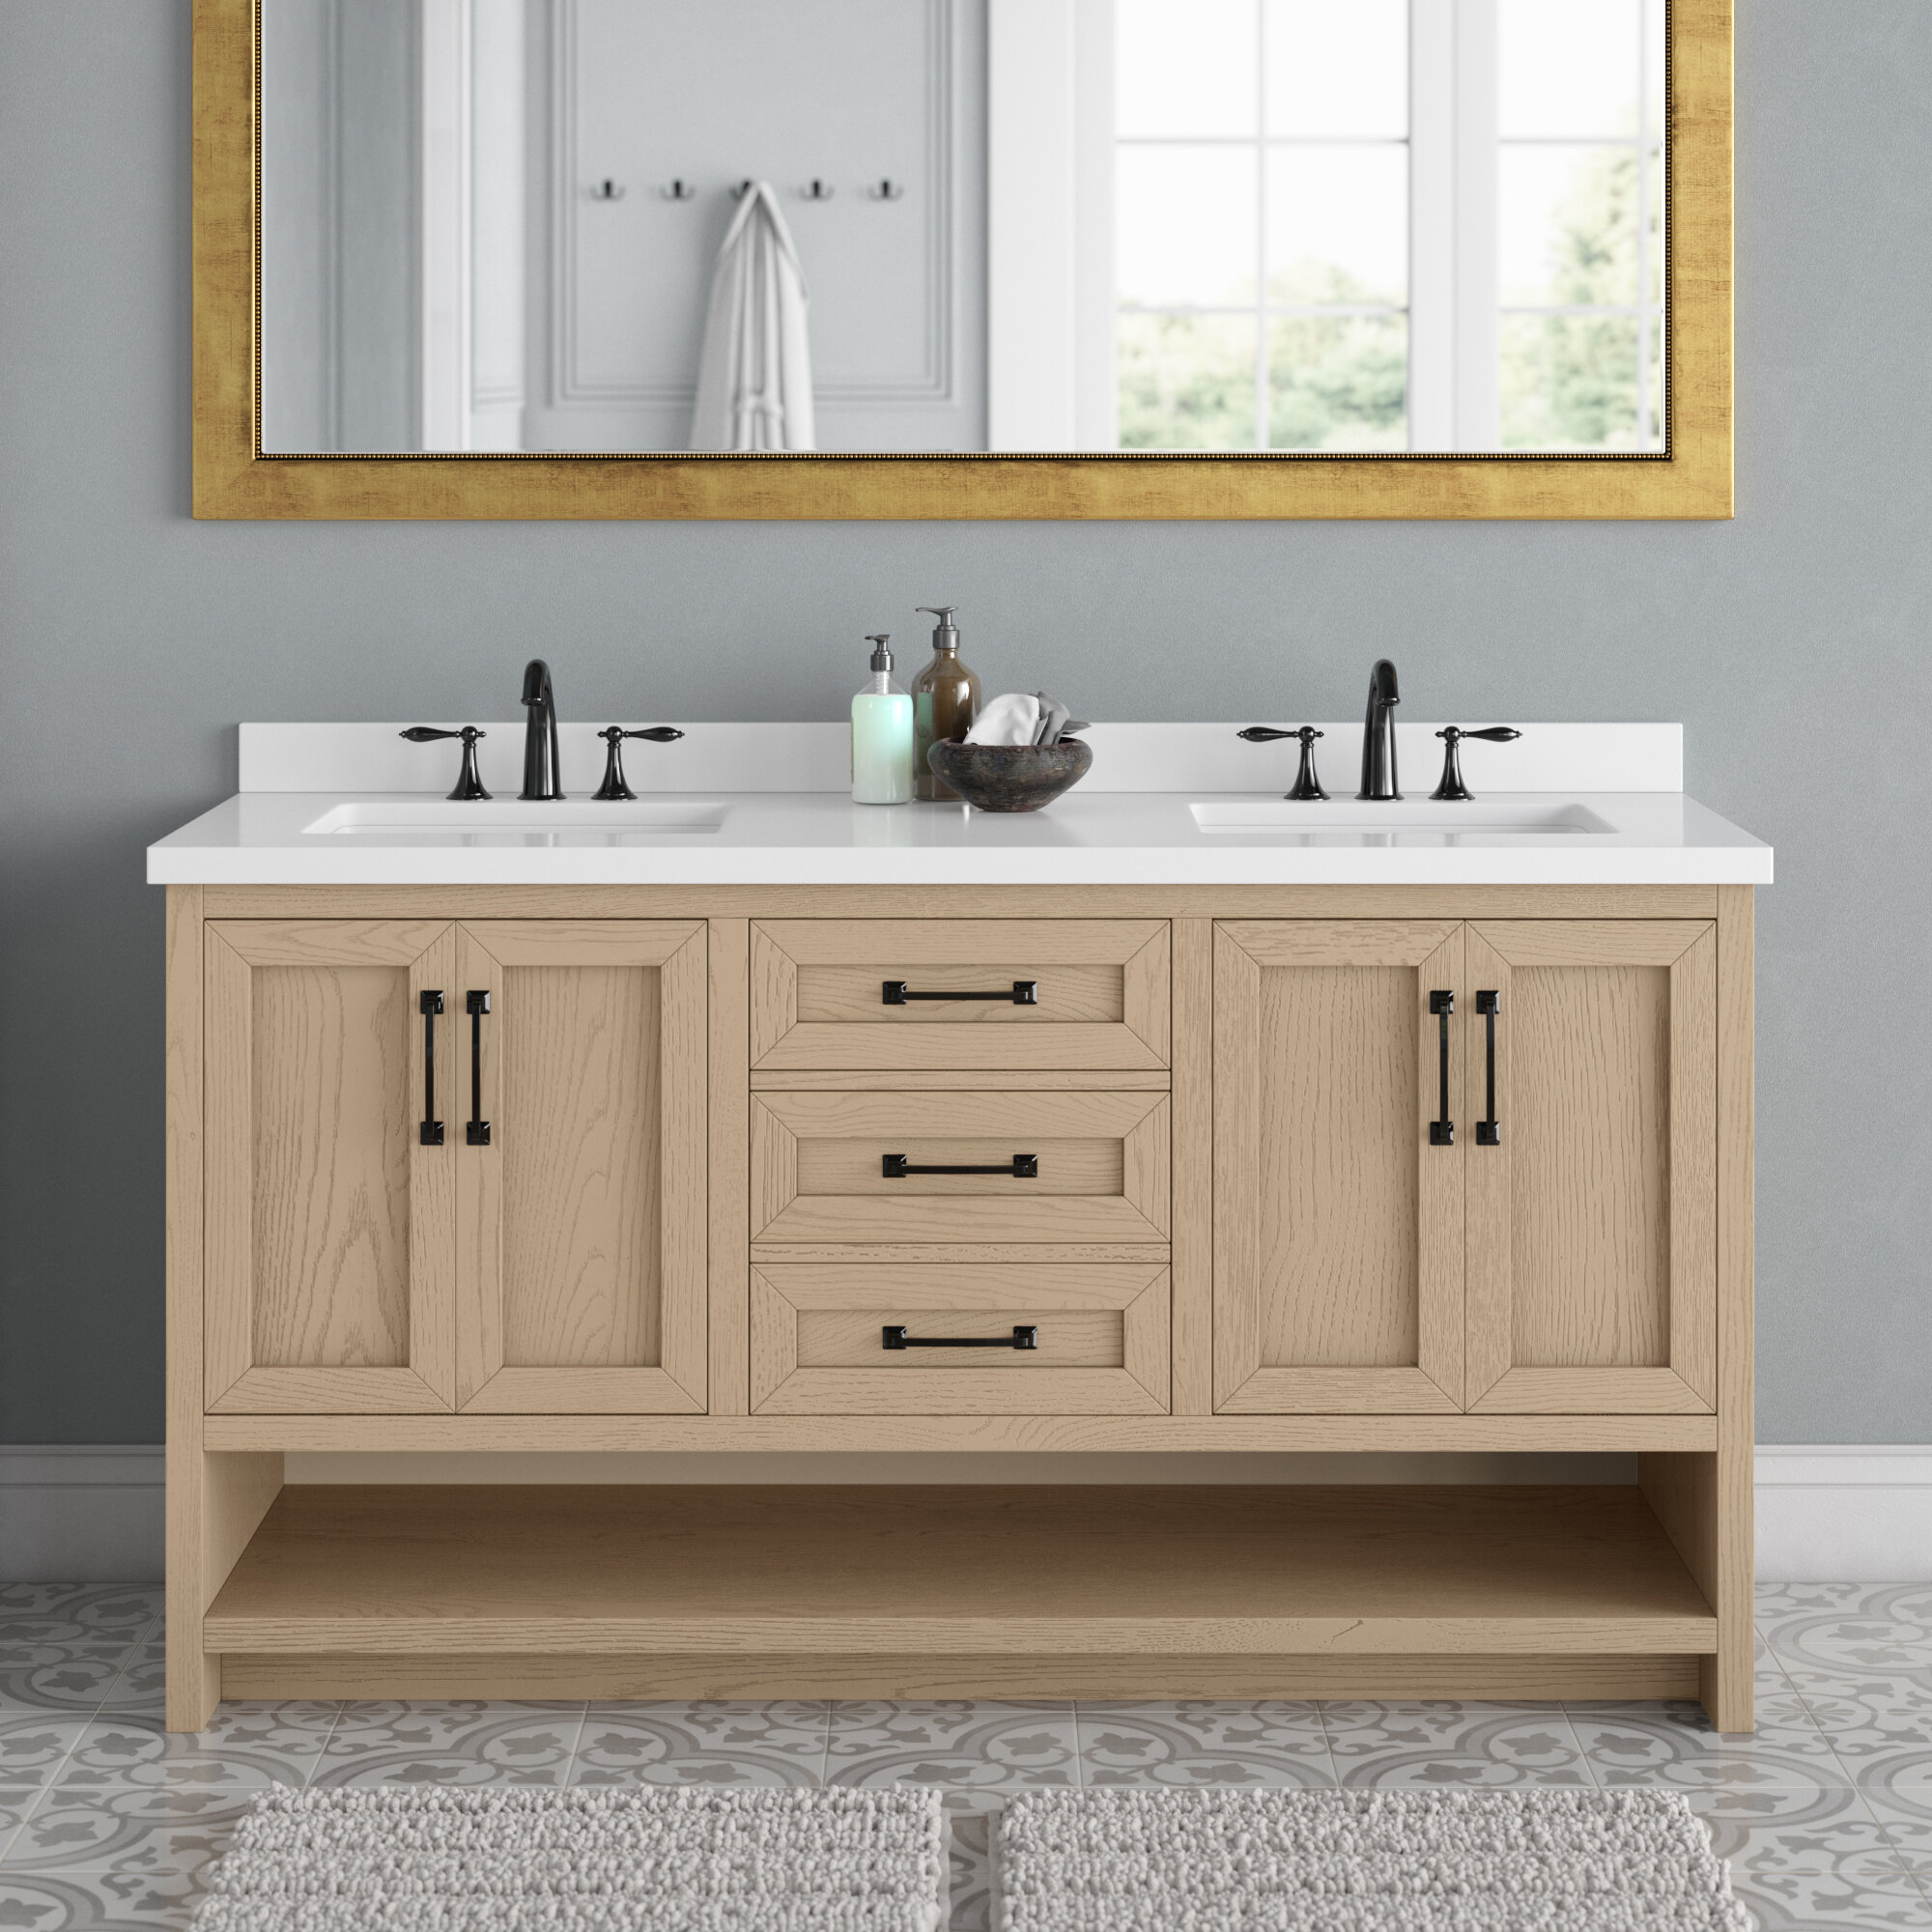 Bathroom Vanity Idea - An Open Shelf Below The Countertop (17